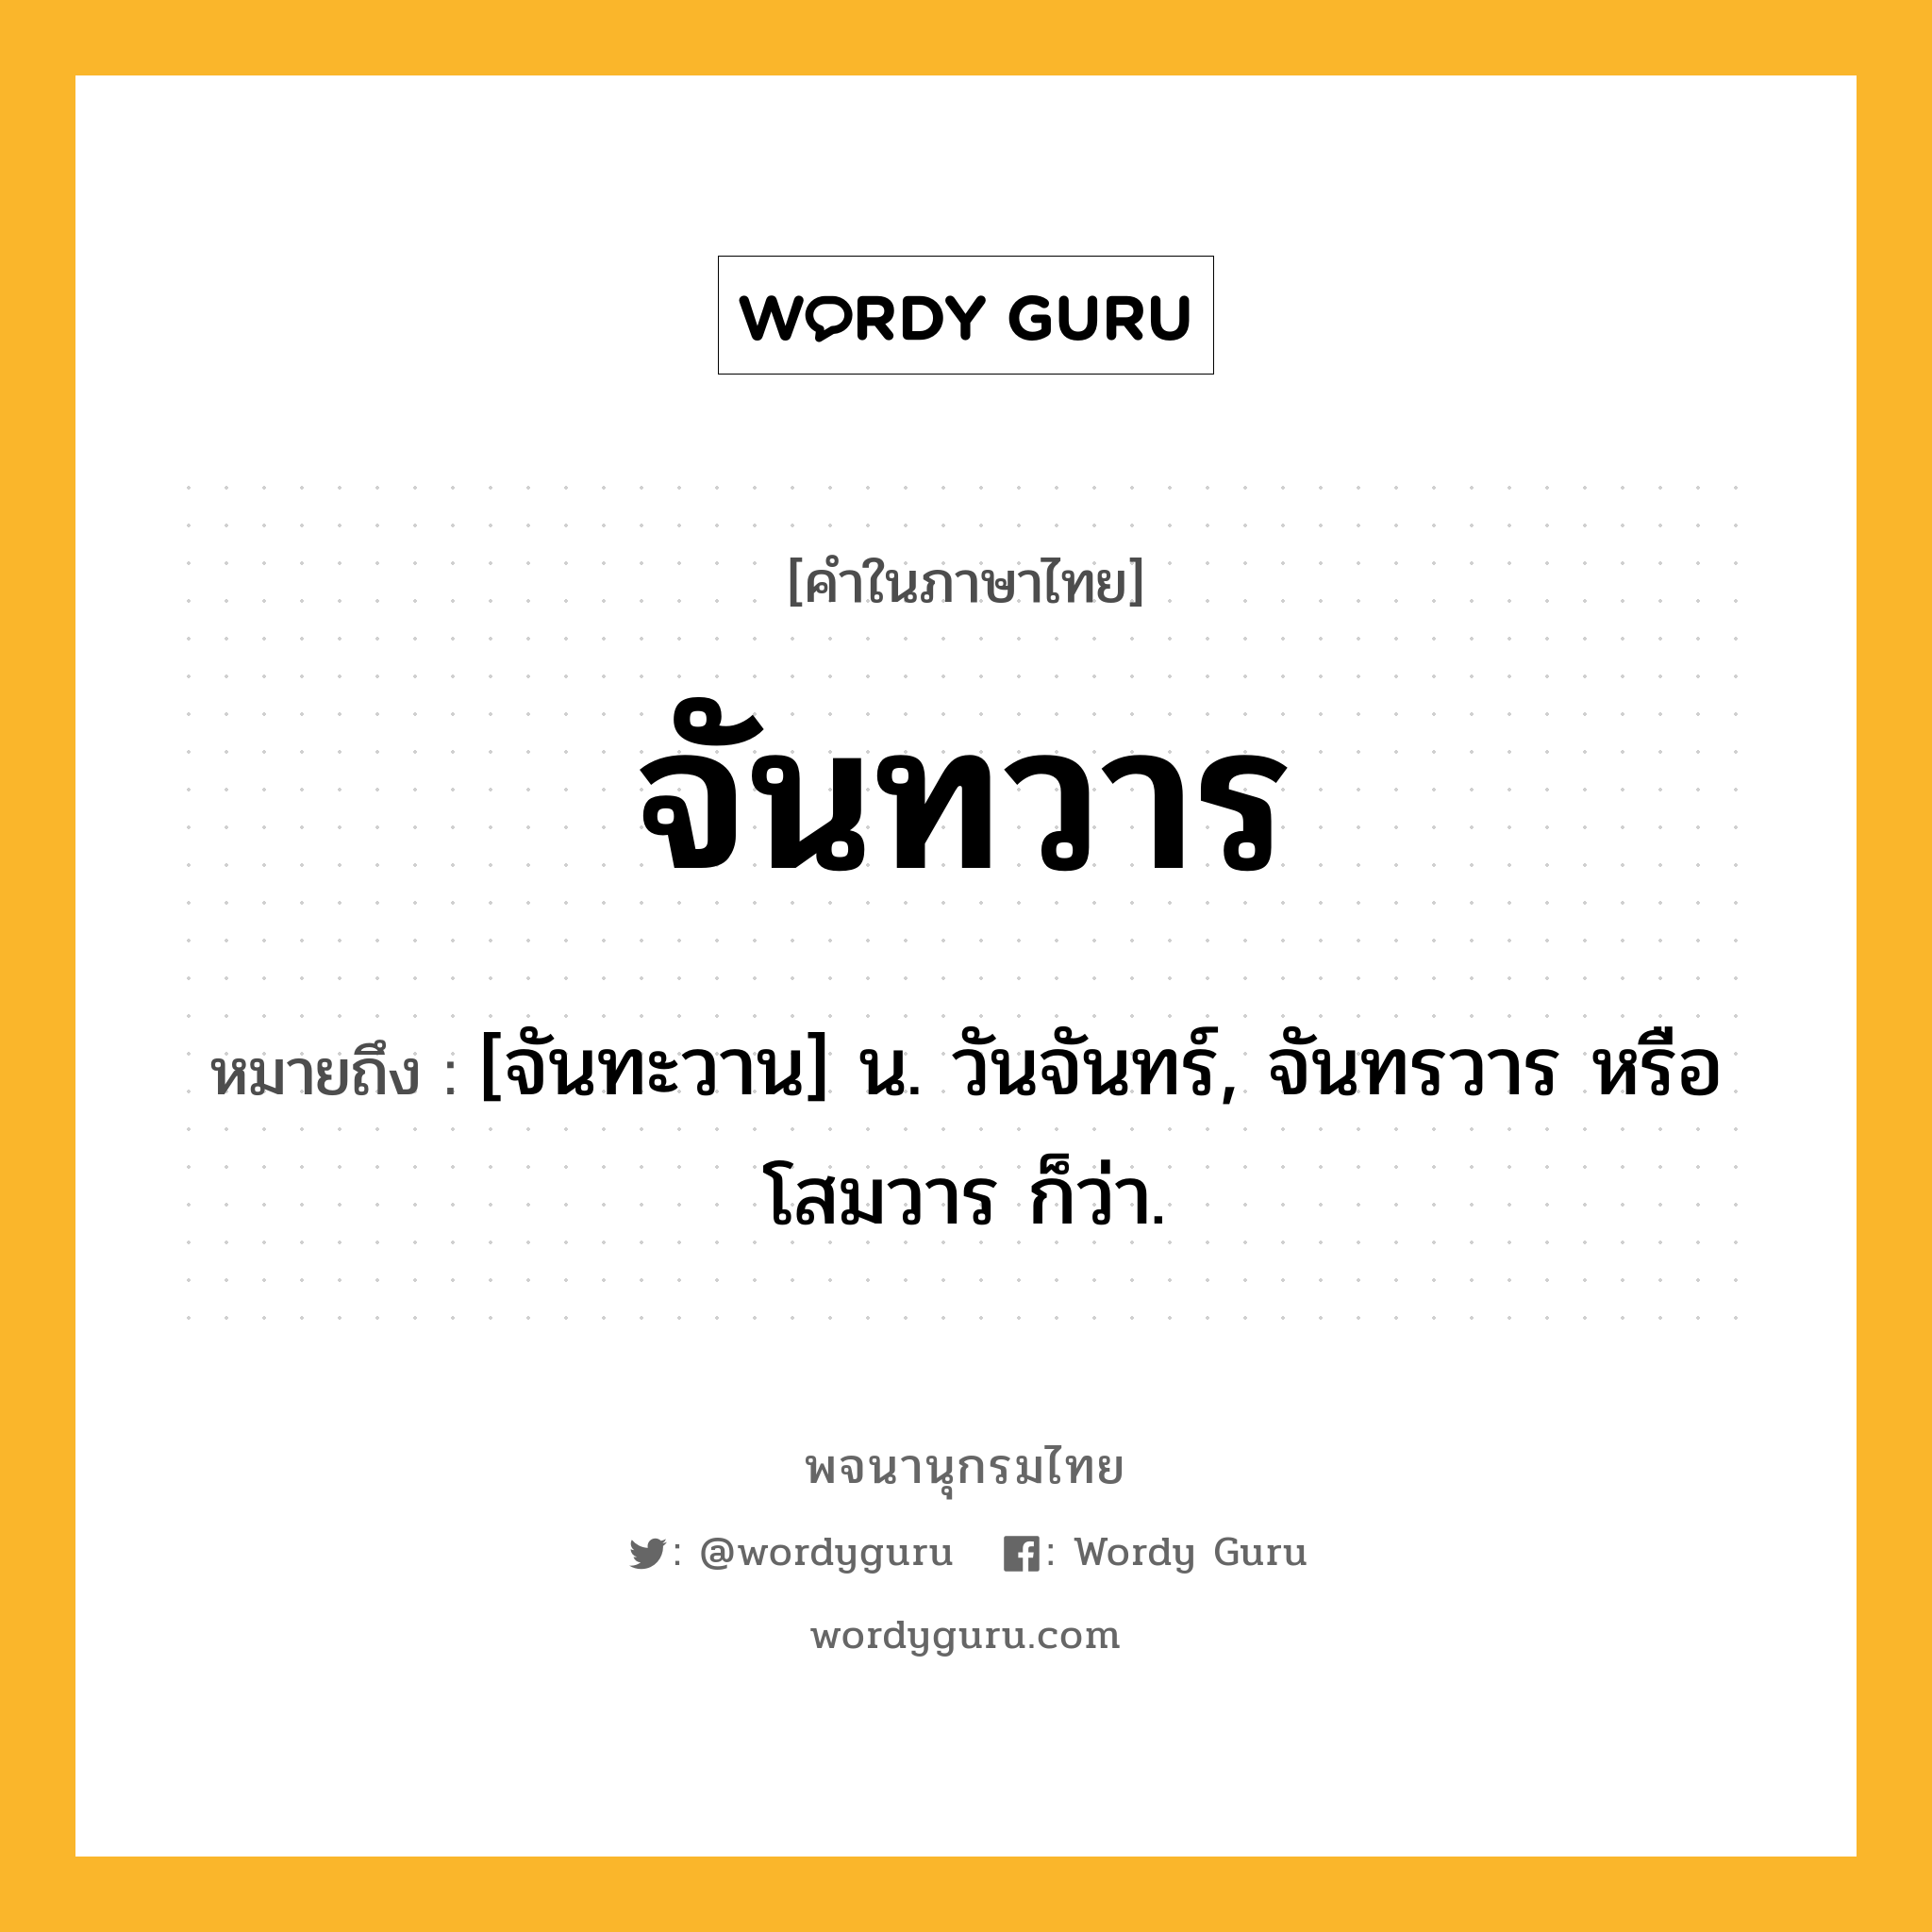 จันทวาร ความหมาย หมายถึงอะไร?, คำในภาษาไทย จันทวาร หมายถึง [จันทะวาน] น. วันจันทร์, จันทรวาร หรือ โสมวาร ก็ว่า.